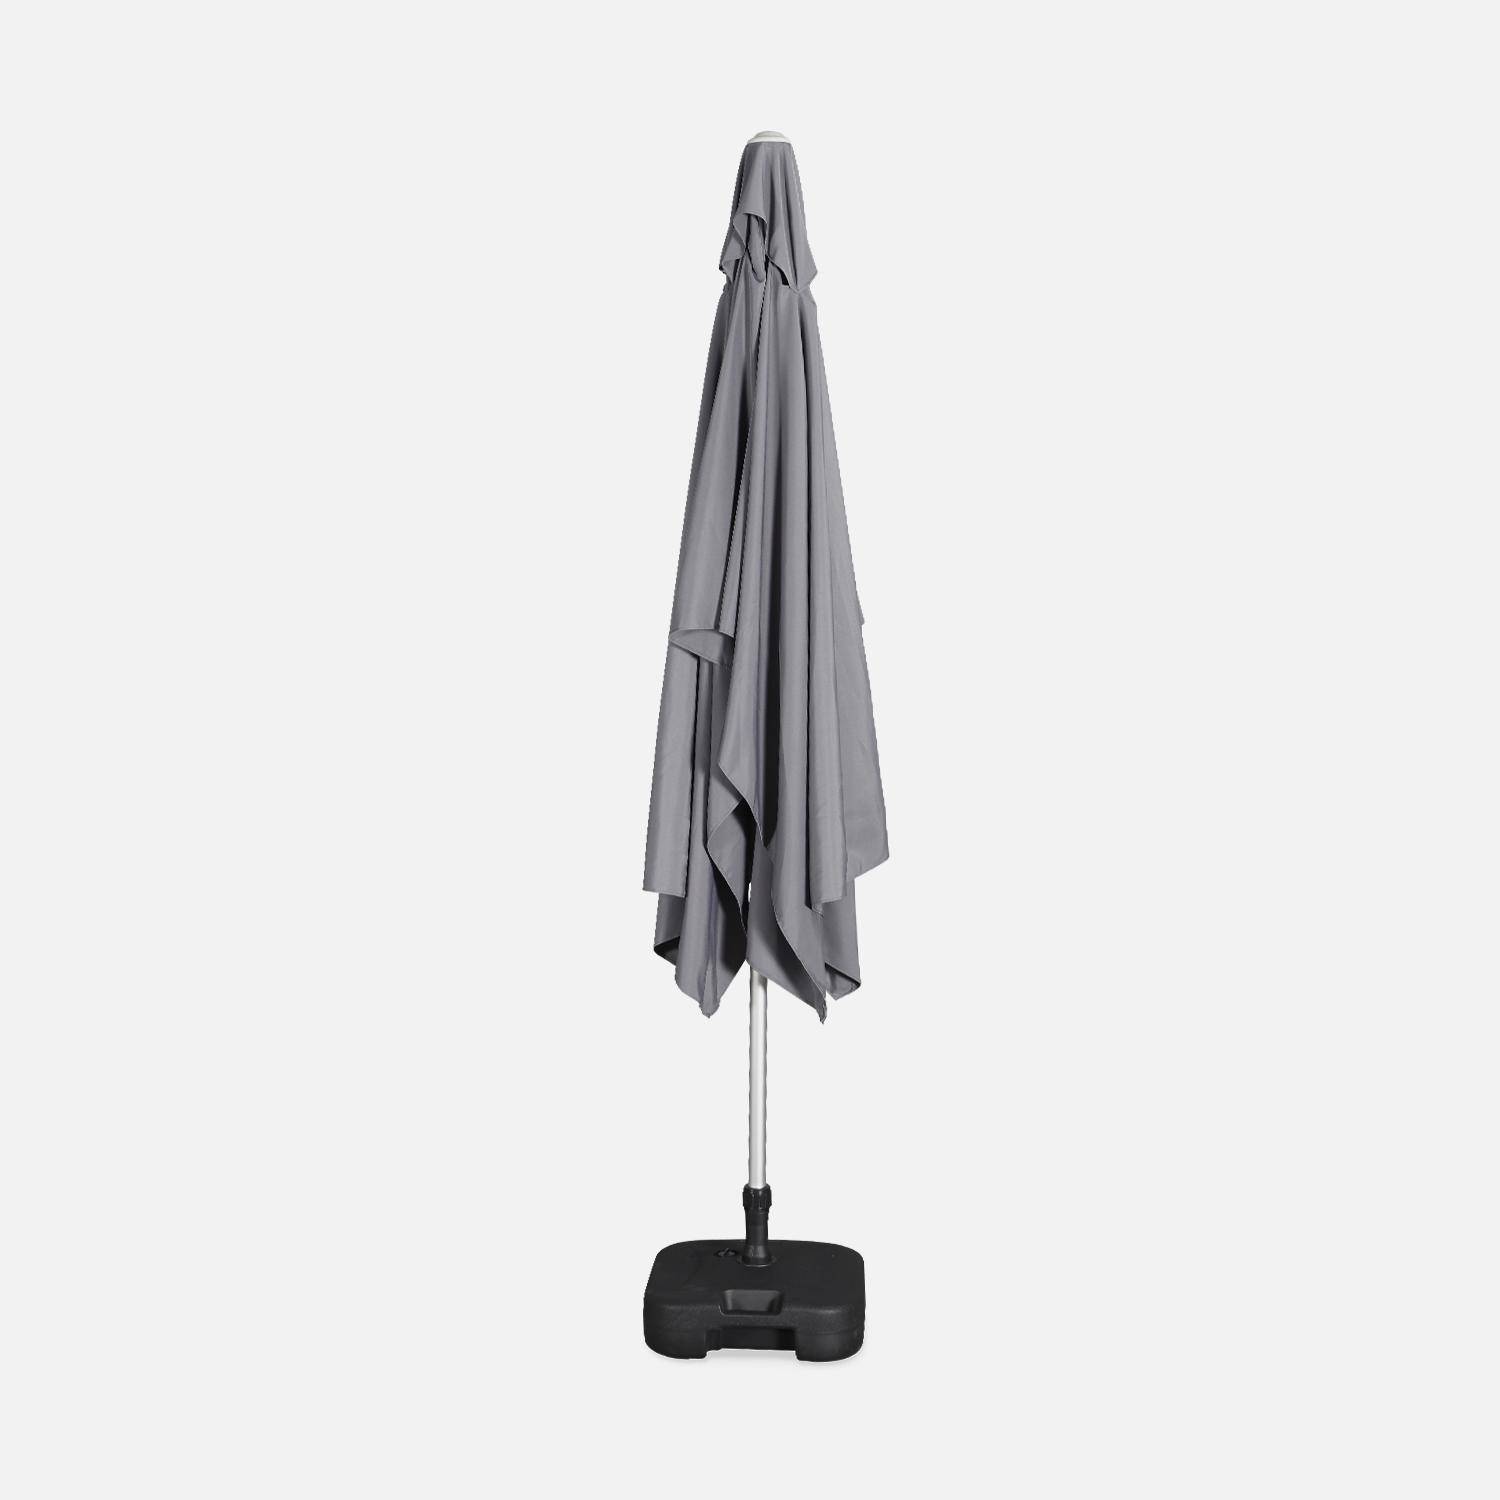 Parasol Wissant, 2x3m, couleur gris, mât central, aluminium anodisé orientable, manivelle d'ouverture ,sweeek,Photo6